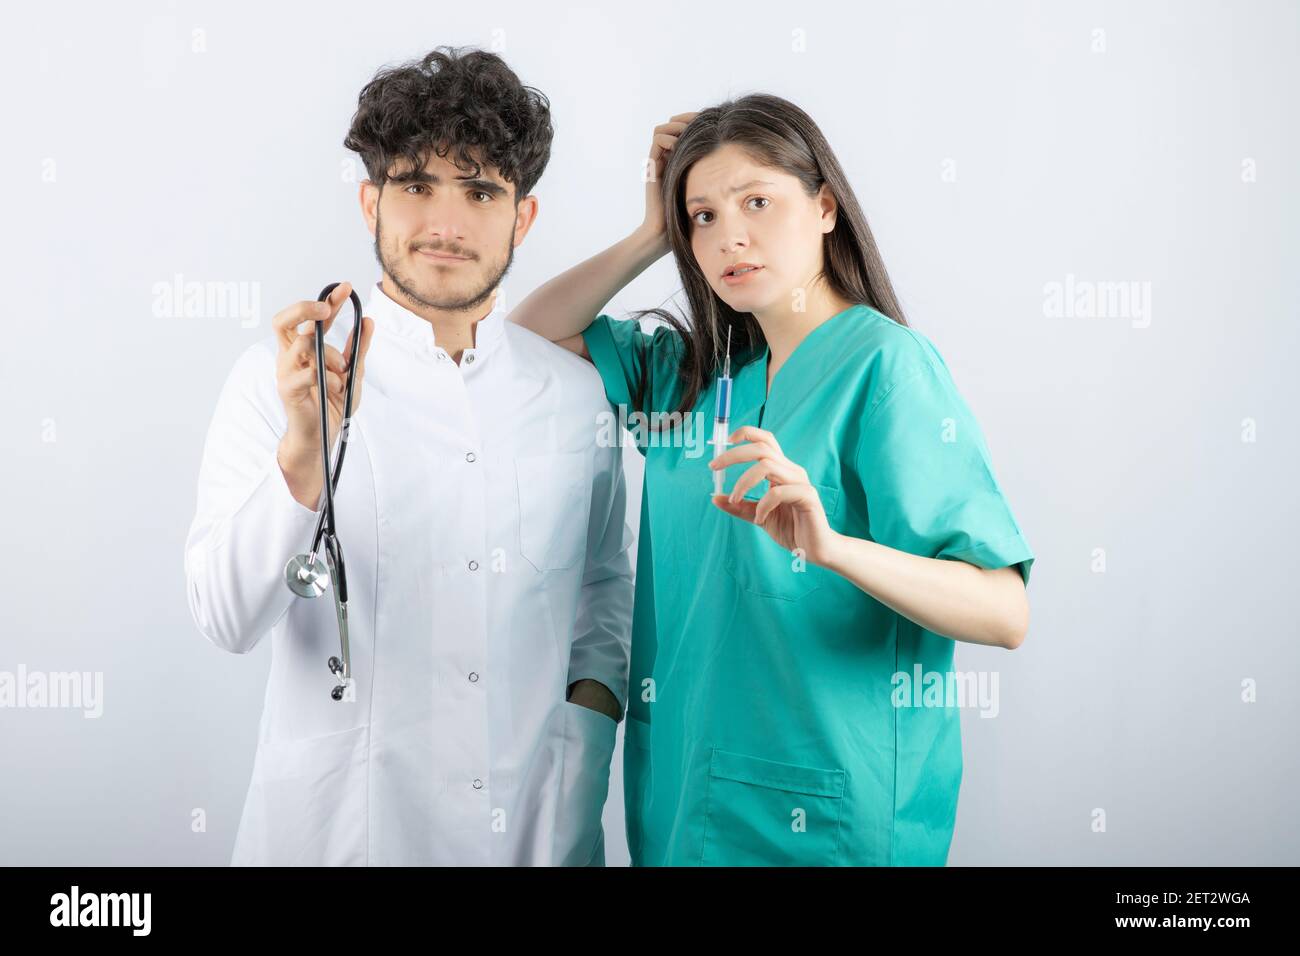 Medico di sesso maschile che tiene lo stetoscopio vicino a un'infermiera di sesso femminile che contiene la siringa Foto Stock